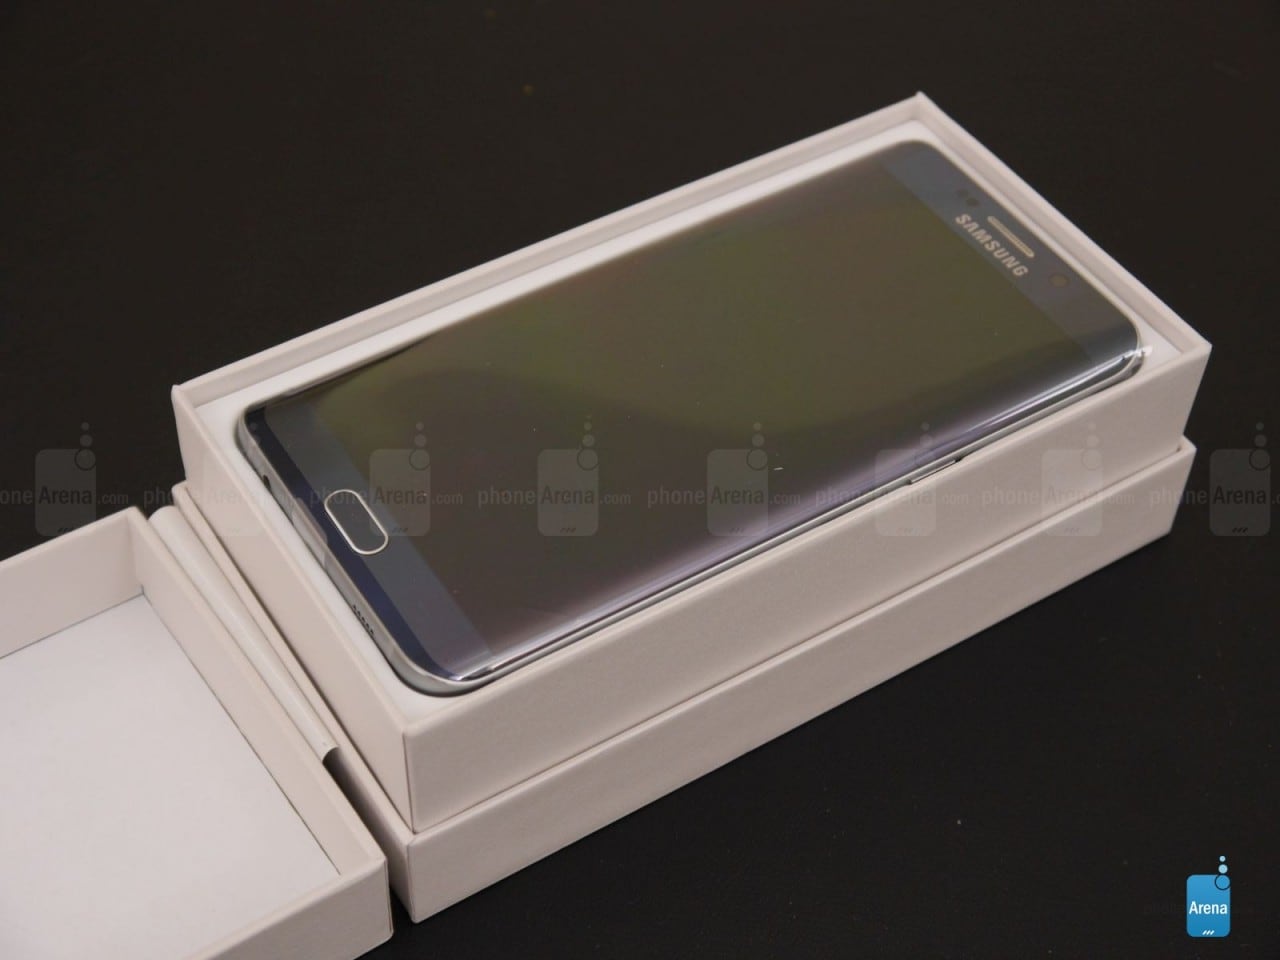 Samsung Galaxy S6 edge+ si mostra in un primo unboxing (foto e video)